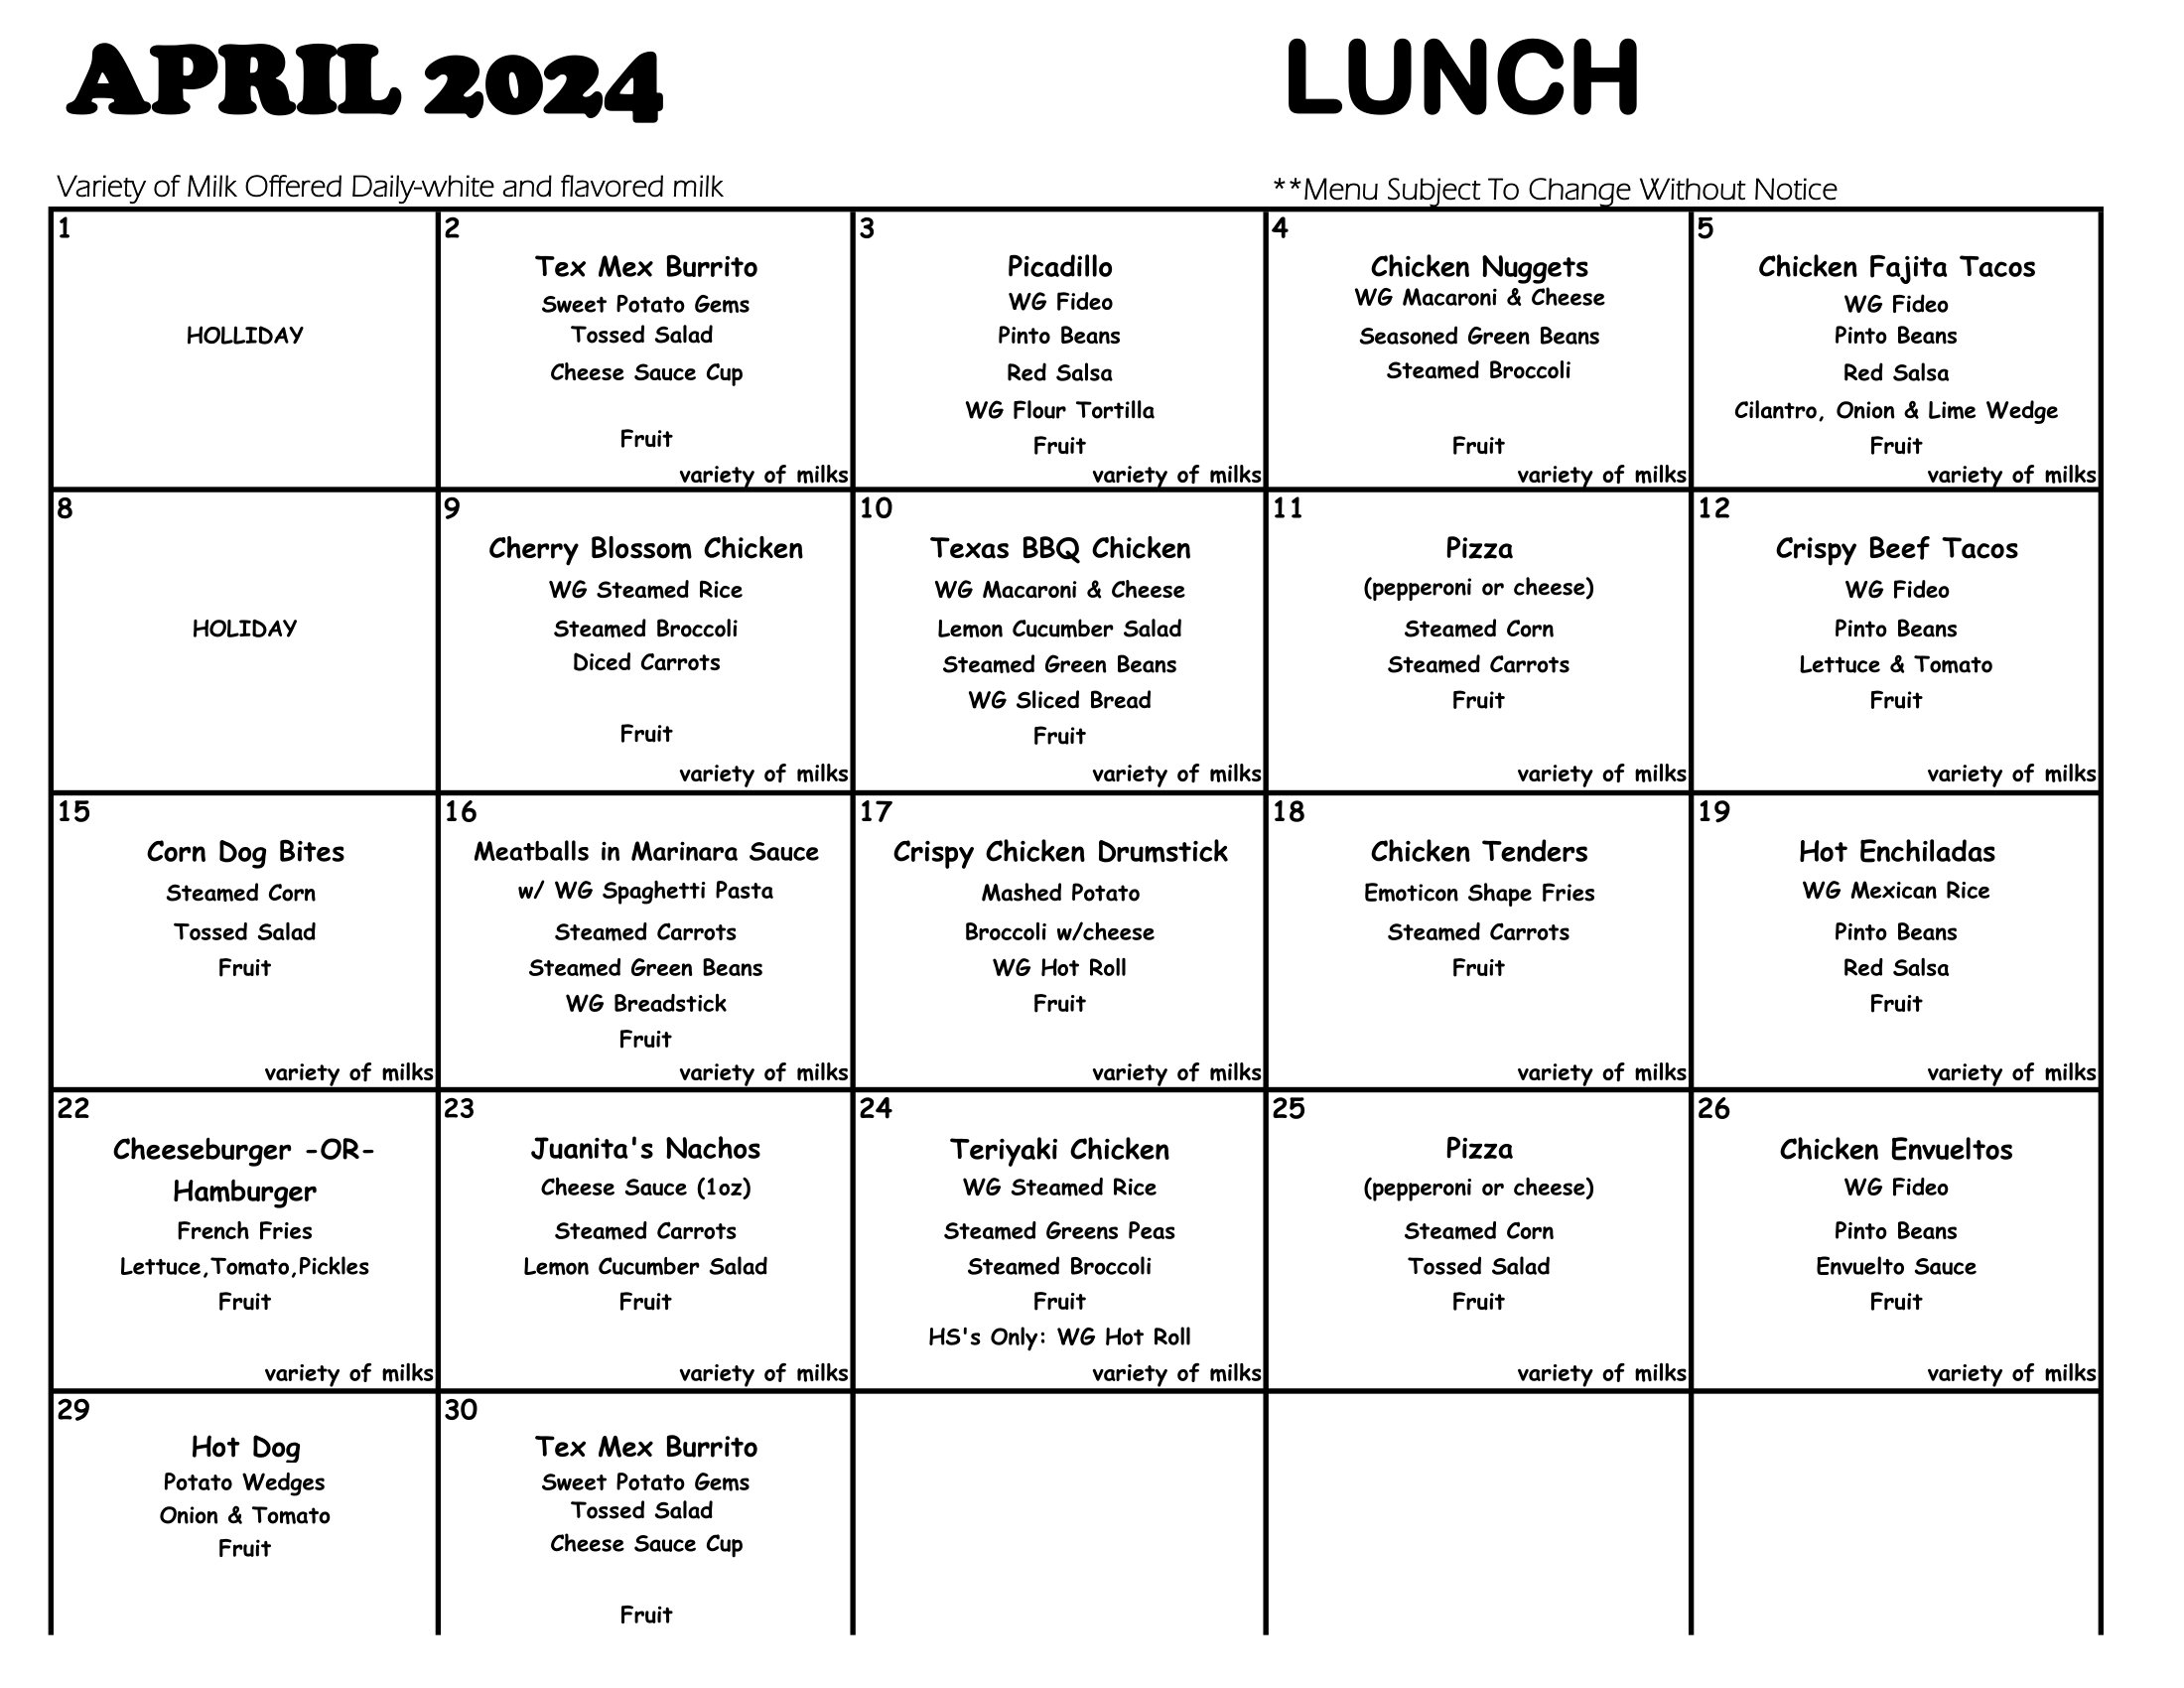 April 2024 lunch menus